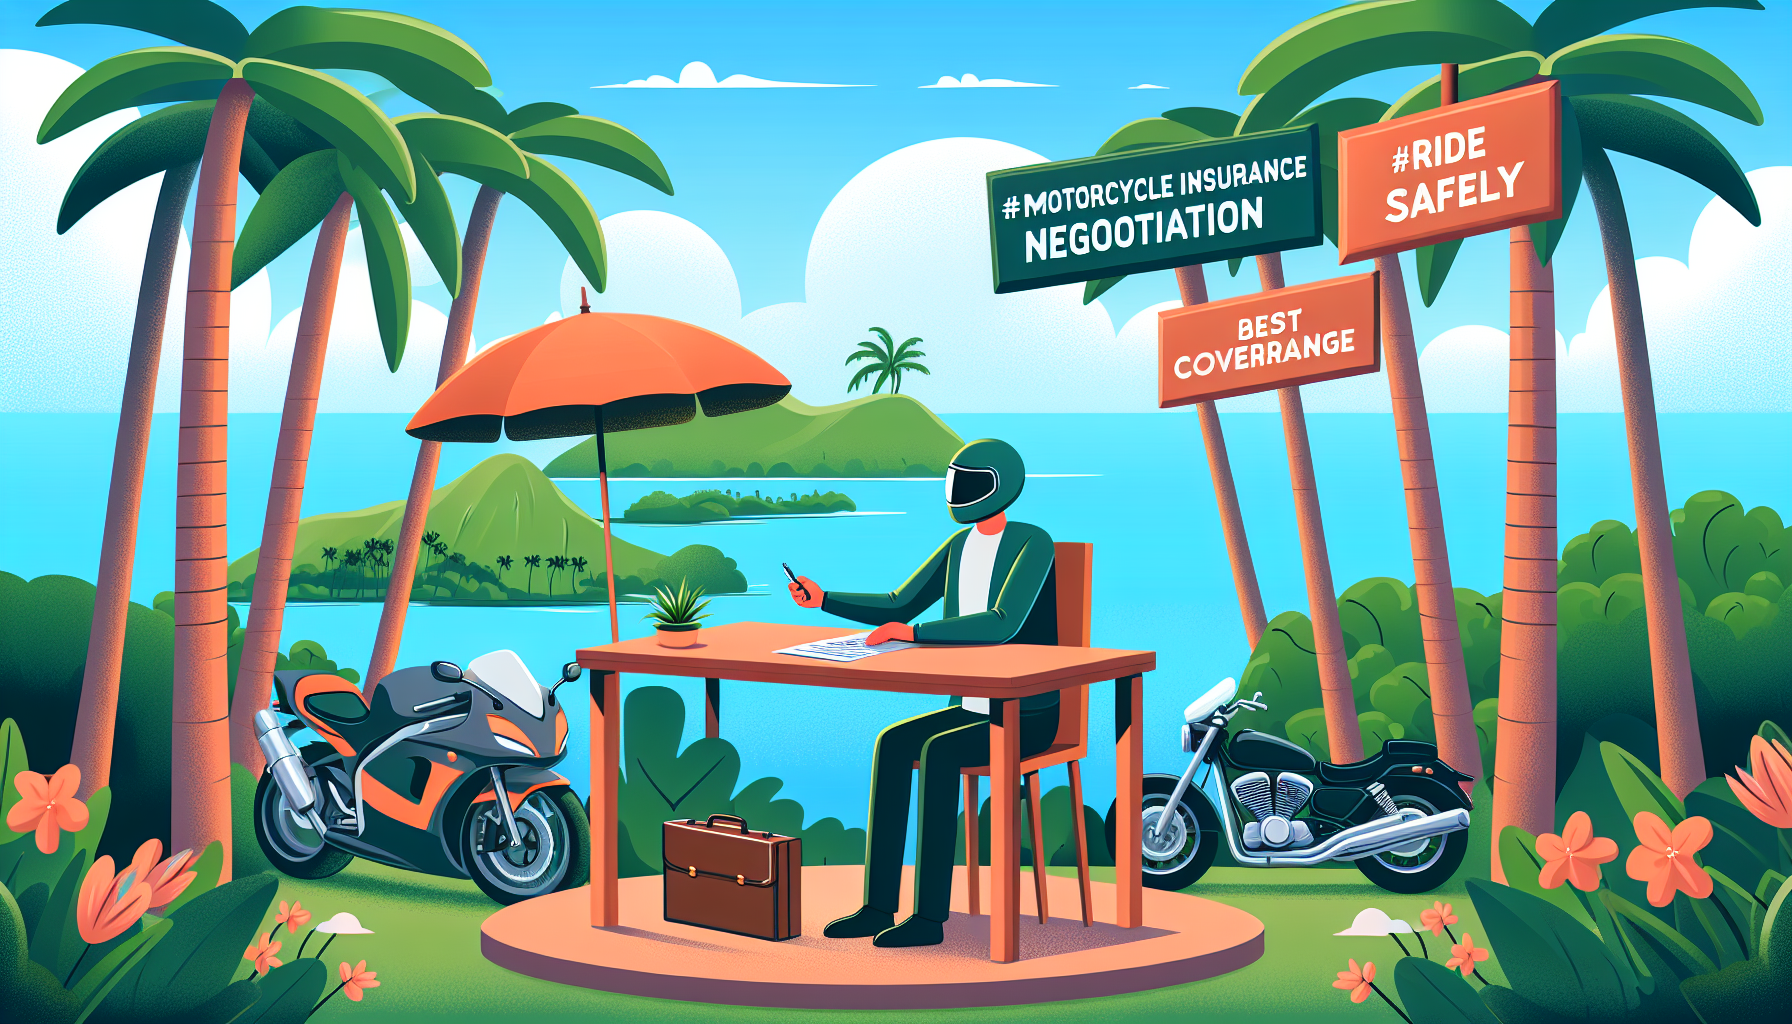 découvrez nos conseils pour négocier efficacement votre contrat d'assurance moto à la réunion et obtenir la meilleure couverture au meilleur prix.